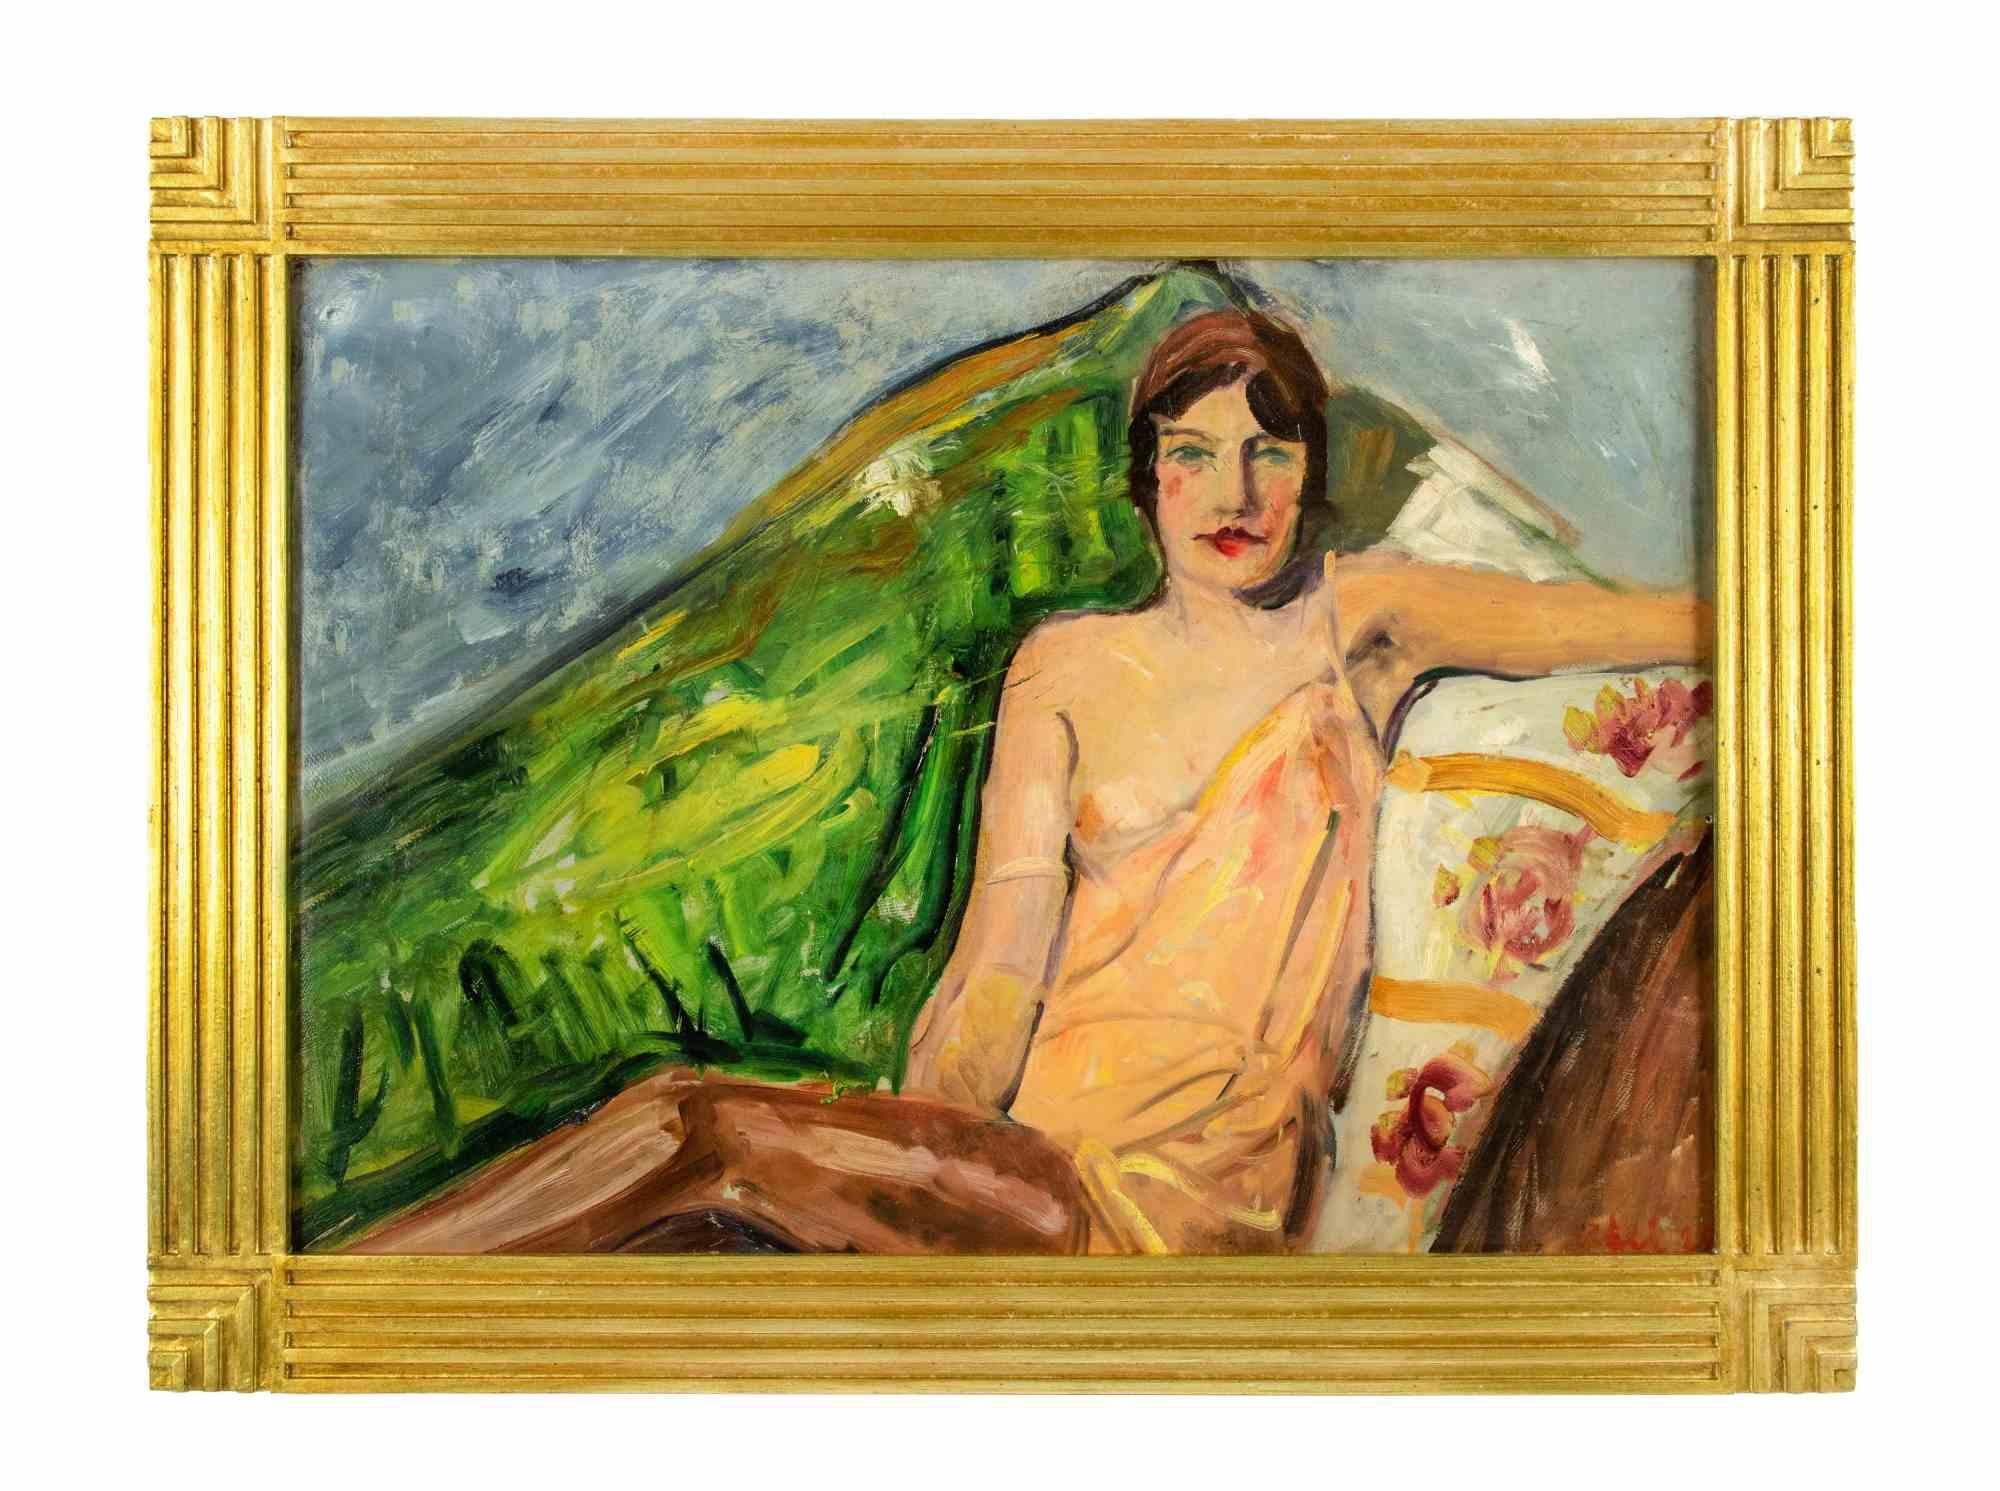 Frau auf Sofa ist ein modernes Kunstwerk von Antonio Feltrinelli aus den 1930er Jahren.

Ein weiteres Gemälde einer menschlichen Figur auf der Rückseite.

Einschließlich Rahmen.

Gemischte farbige Ölgemälde auf Leinwand


Antonio Feltrinelli